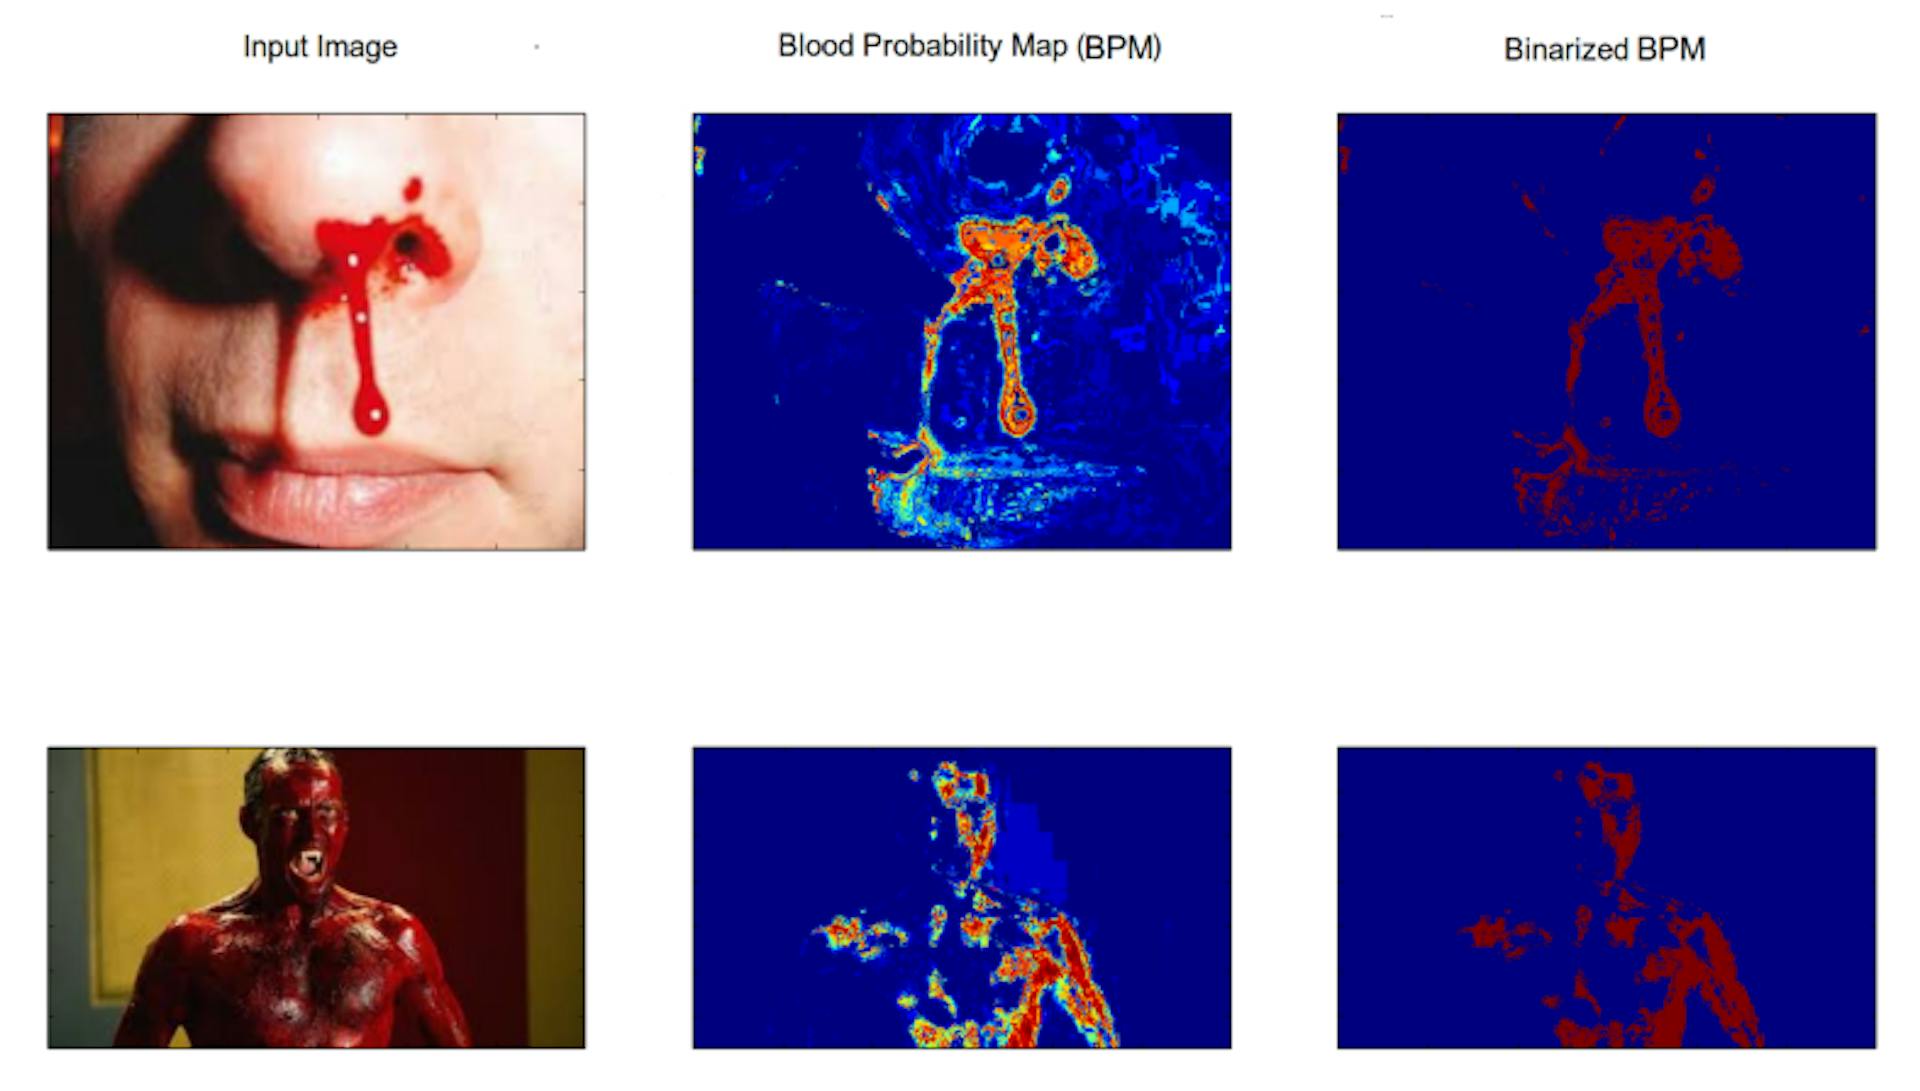 图 3.4：该图显示了生成的血液模型在检测血液方面的表现。第一列是输入图像，第二列是血液概率图，最后一列是二值化血液概率图。